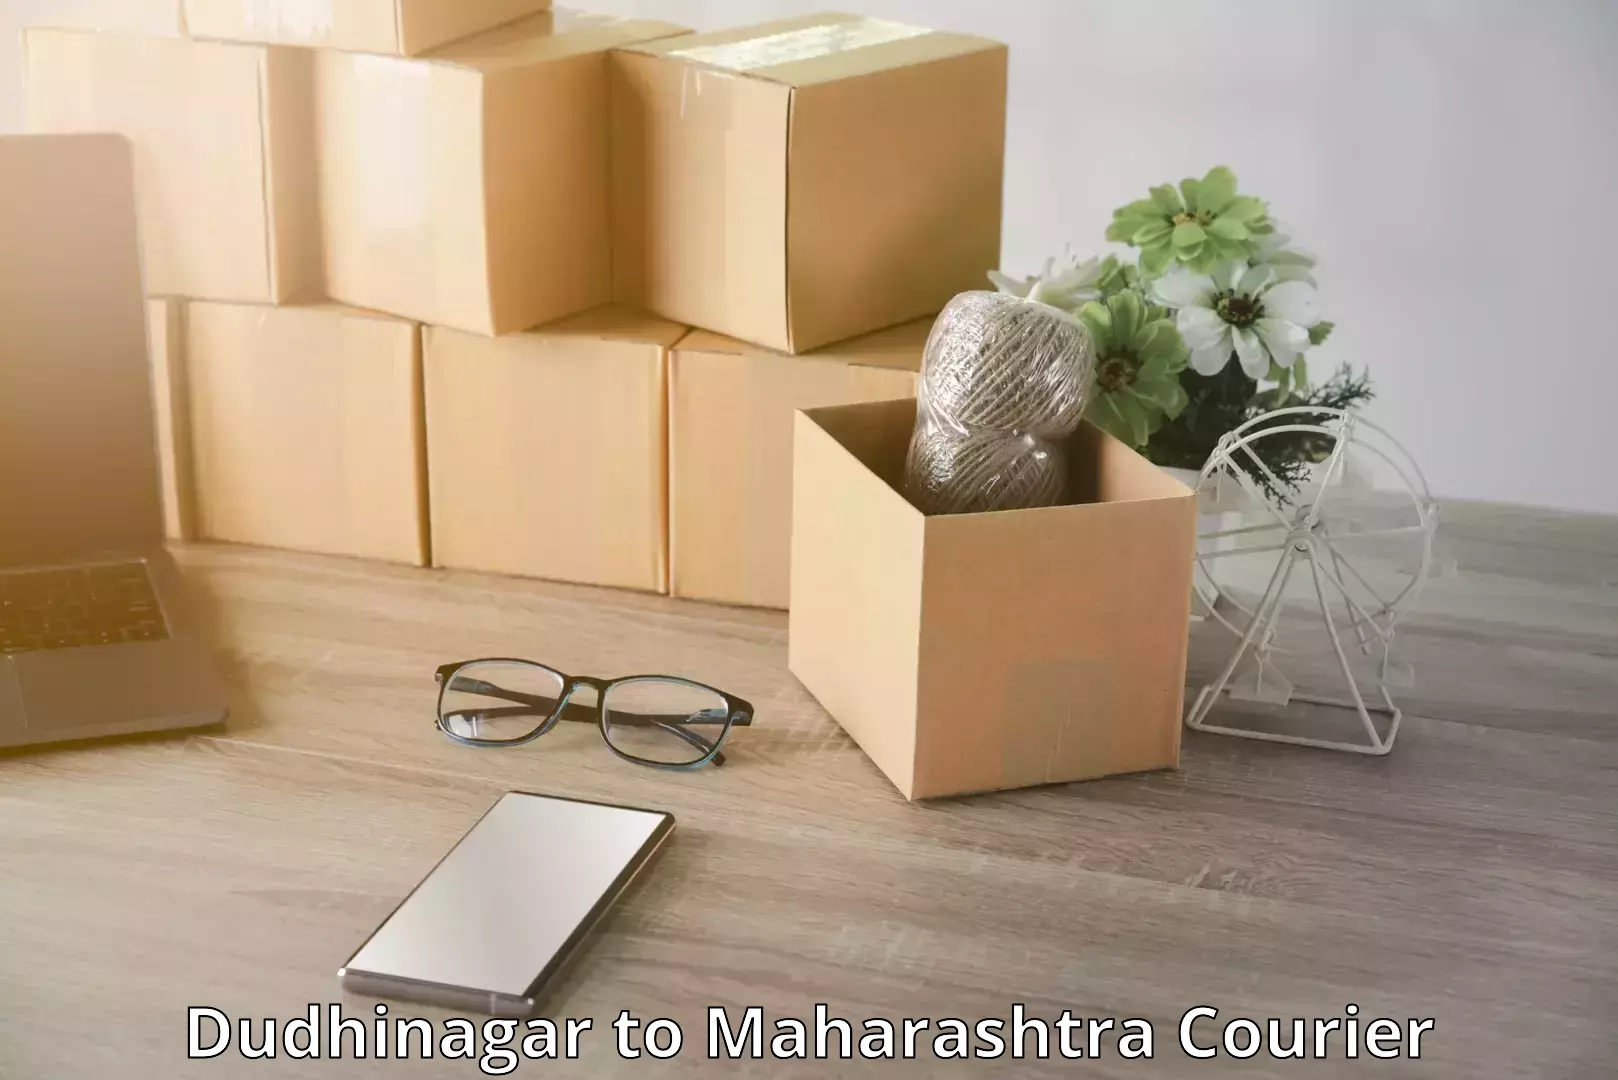 Quick baggage pickup Dudhinagar to Maharashtra